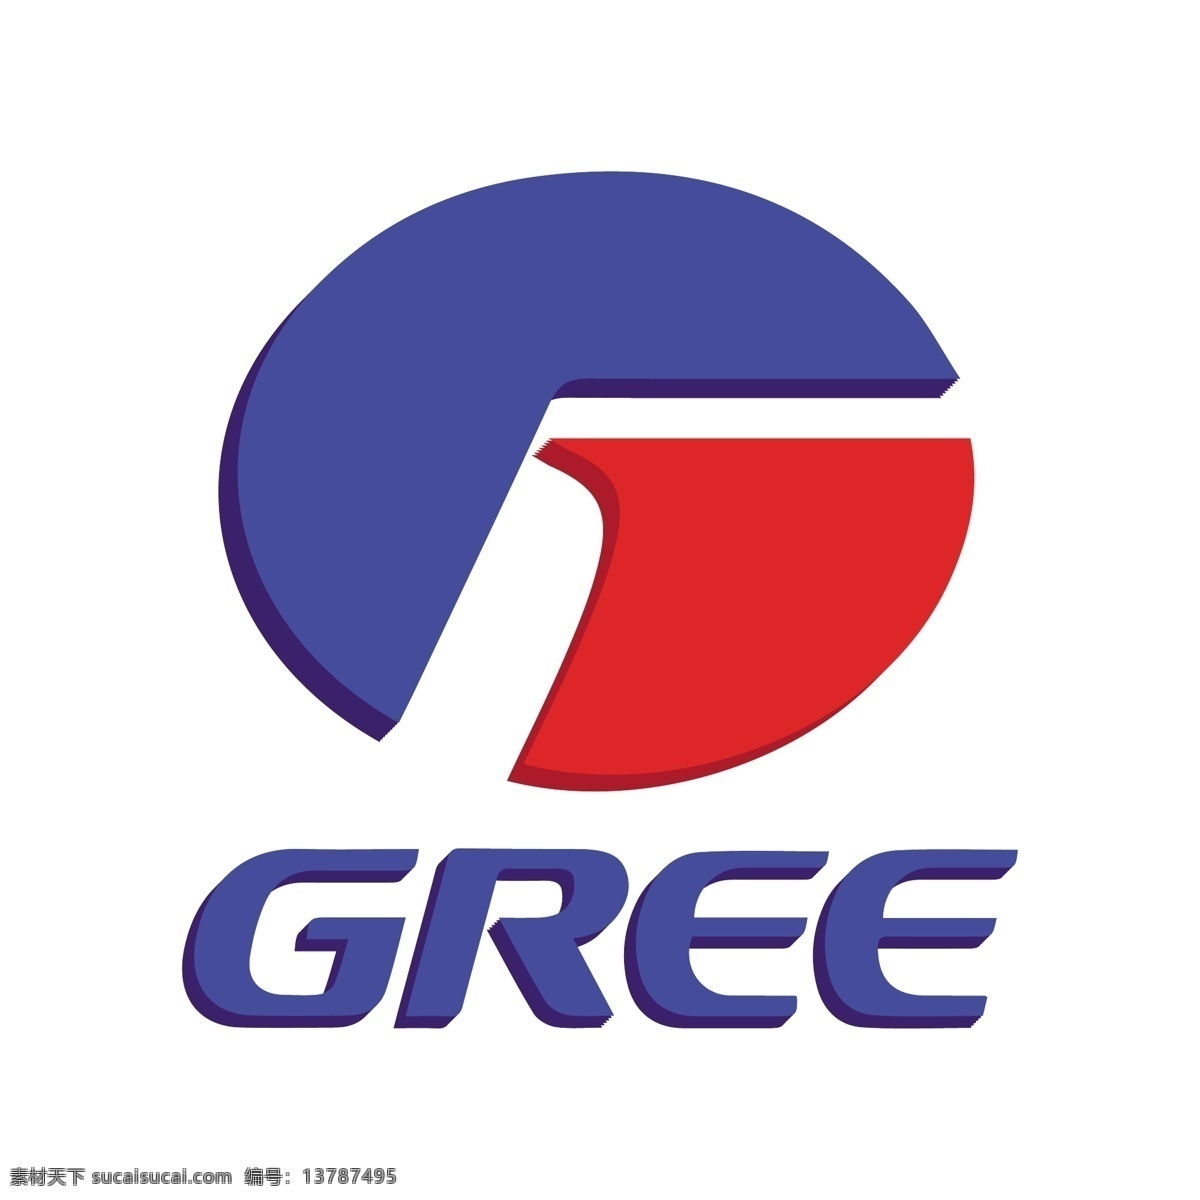 格力 彩色 logo 图标 格力电器 品牌logo 企业图标 矢量 蓝色 500强 空调 品牌 格力logo